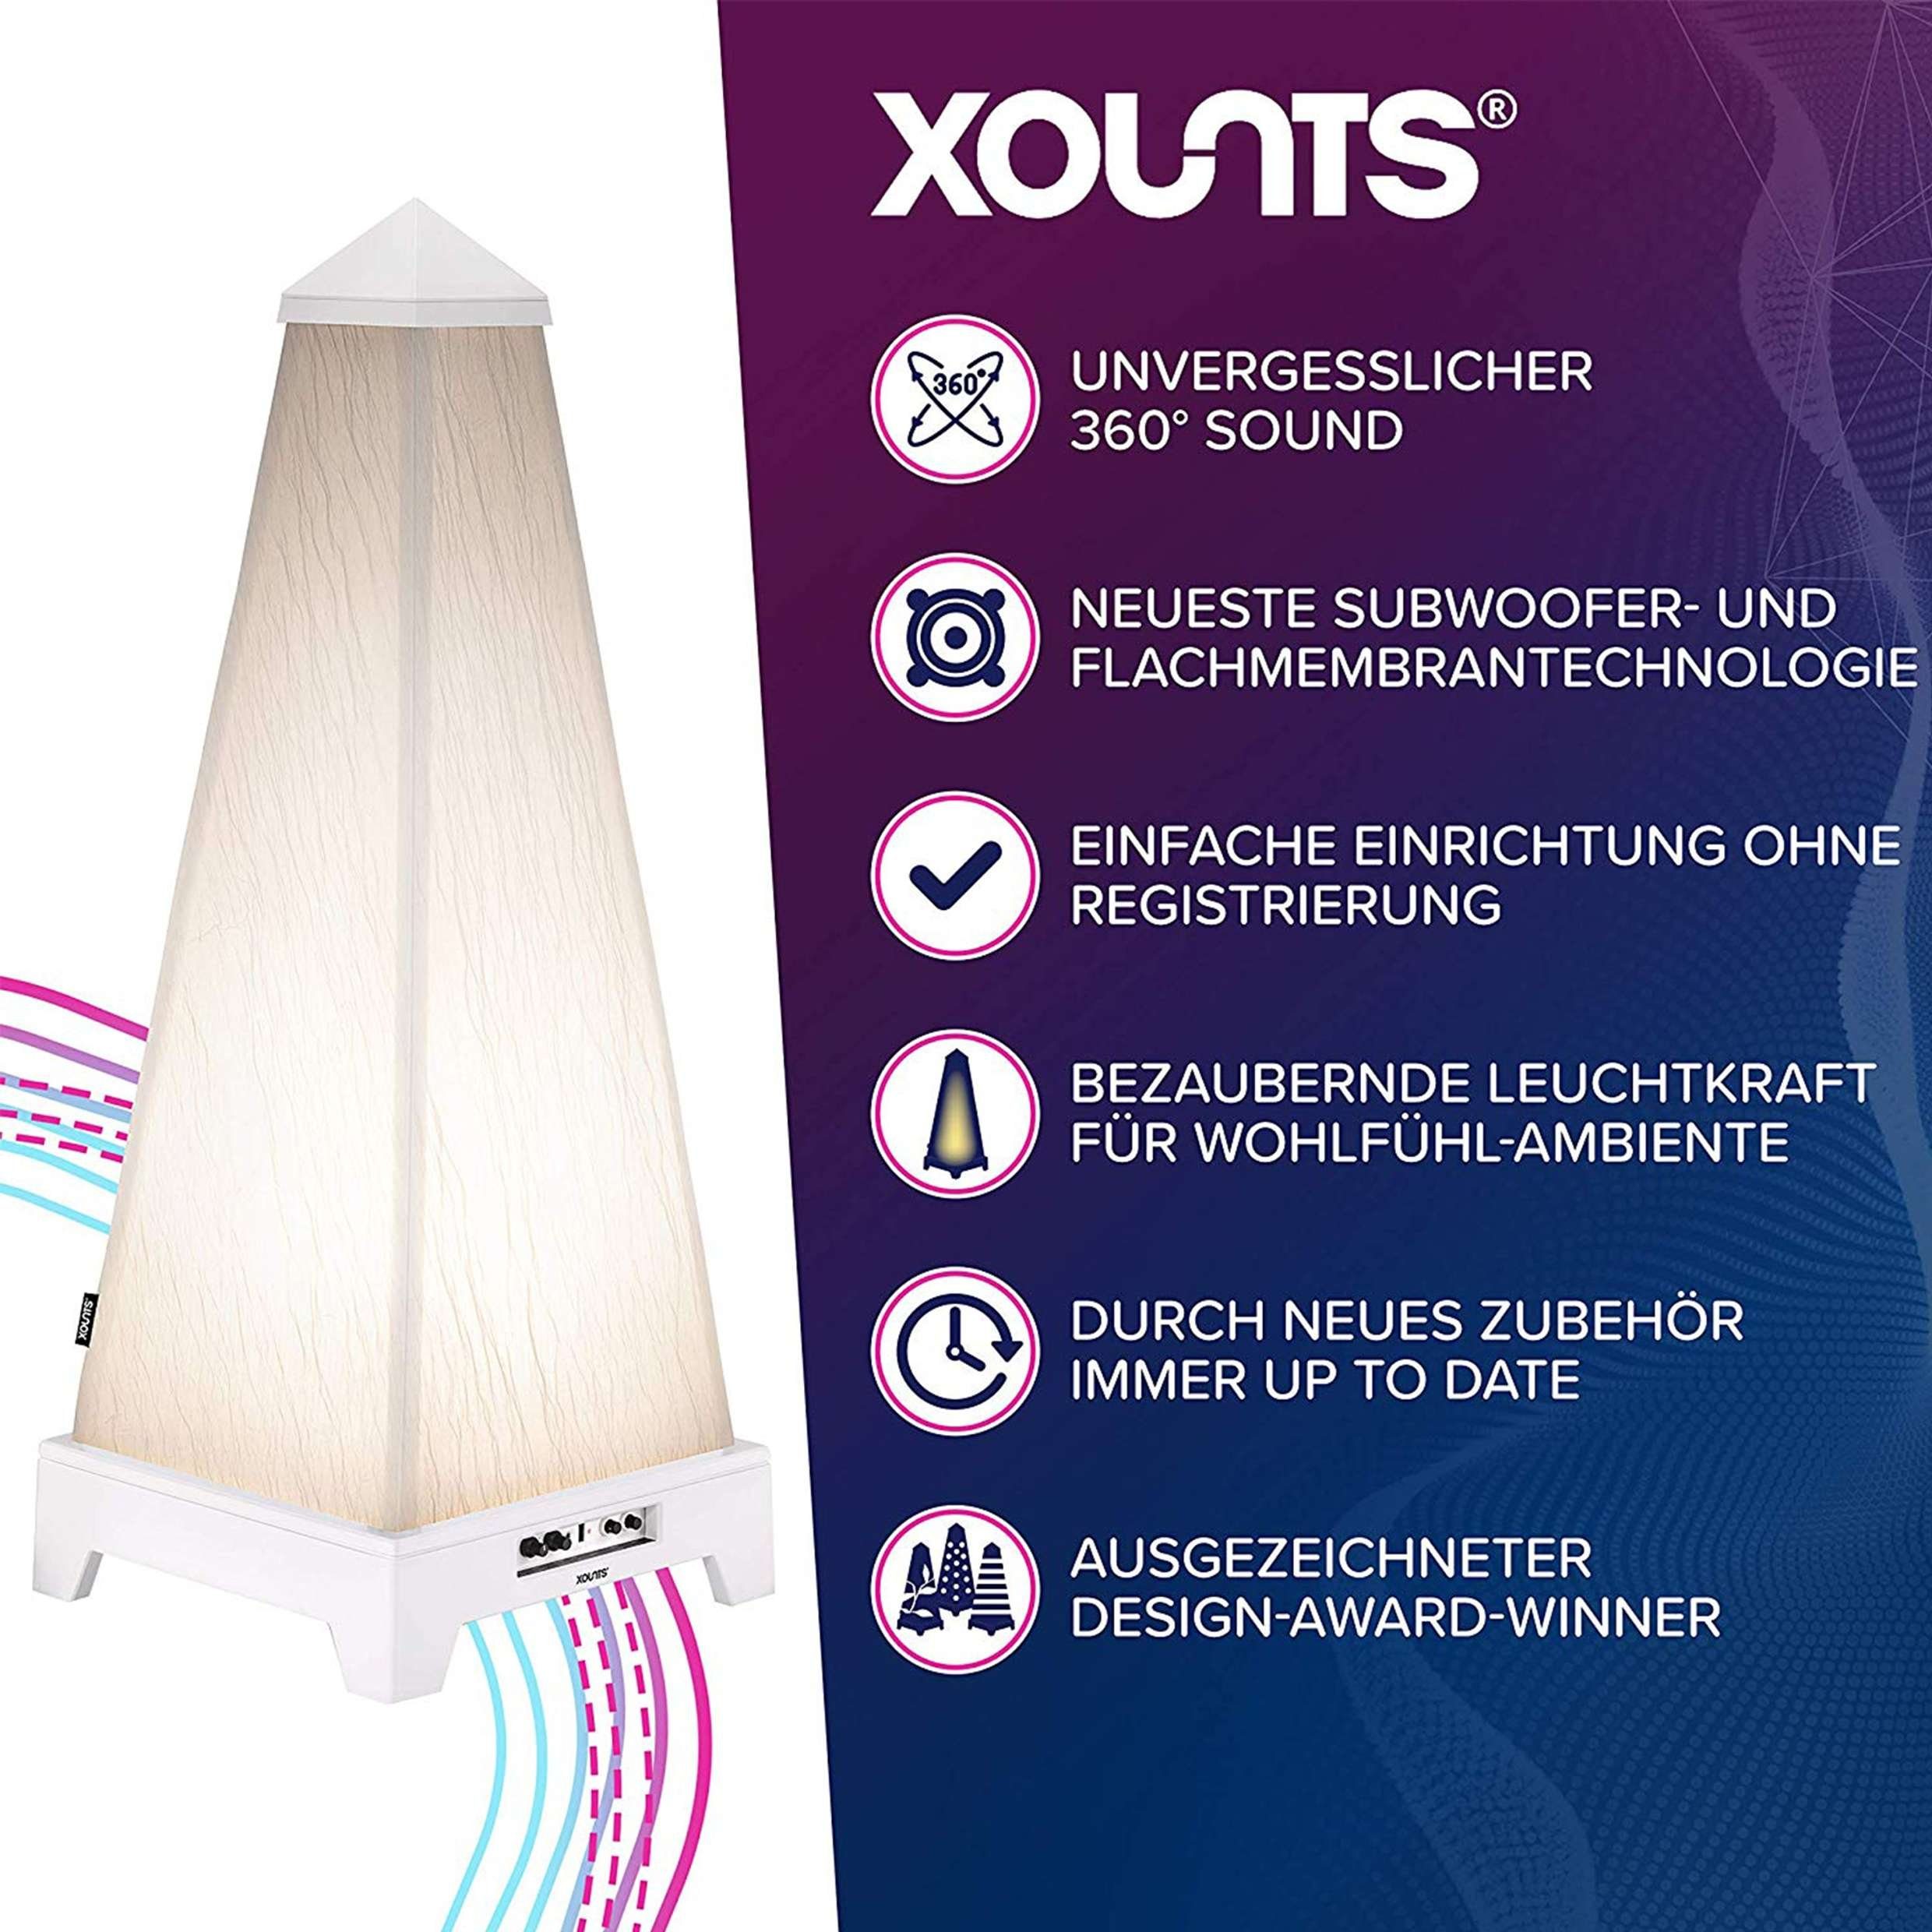 XOUNTS 360° Cover) Raumklang-Erlebnis, XOUNTS Soundsystem (Bluetooth Surround-Lautsprecher austauschbares weiß 4.0,